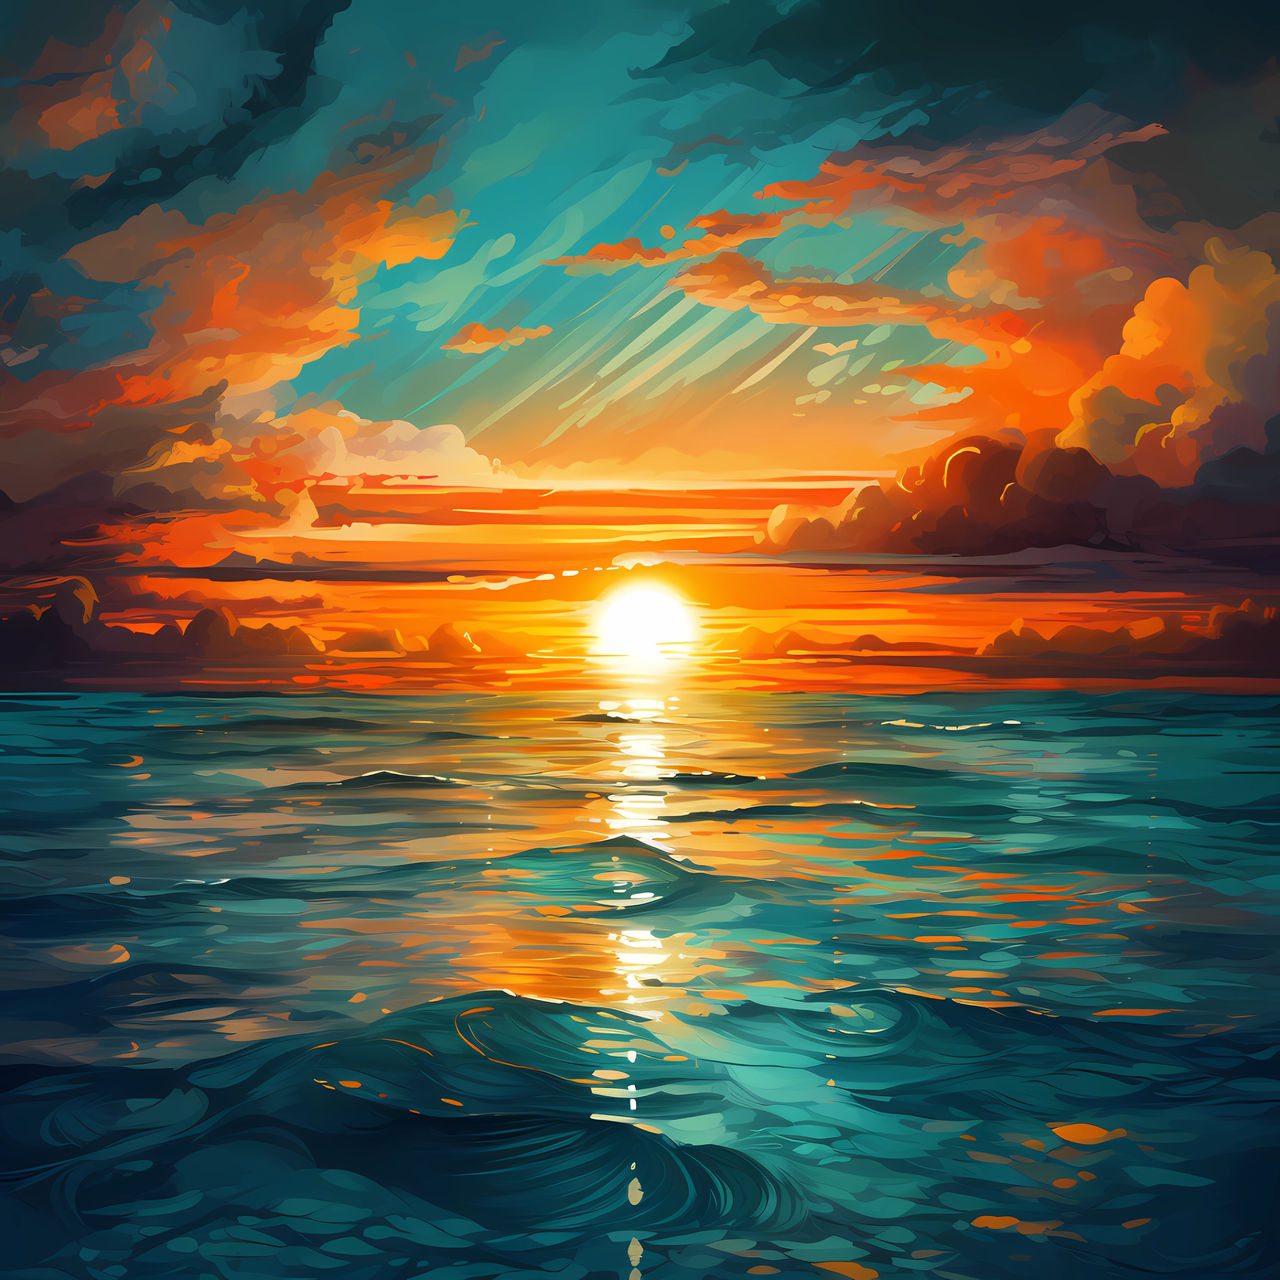 Green Sunset by Aleioz on DeviantArt